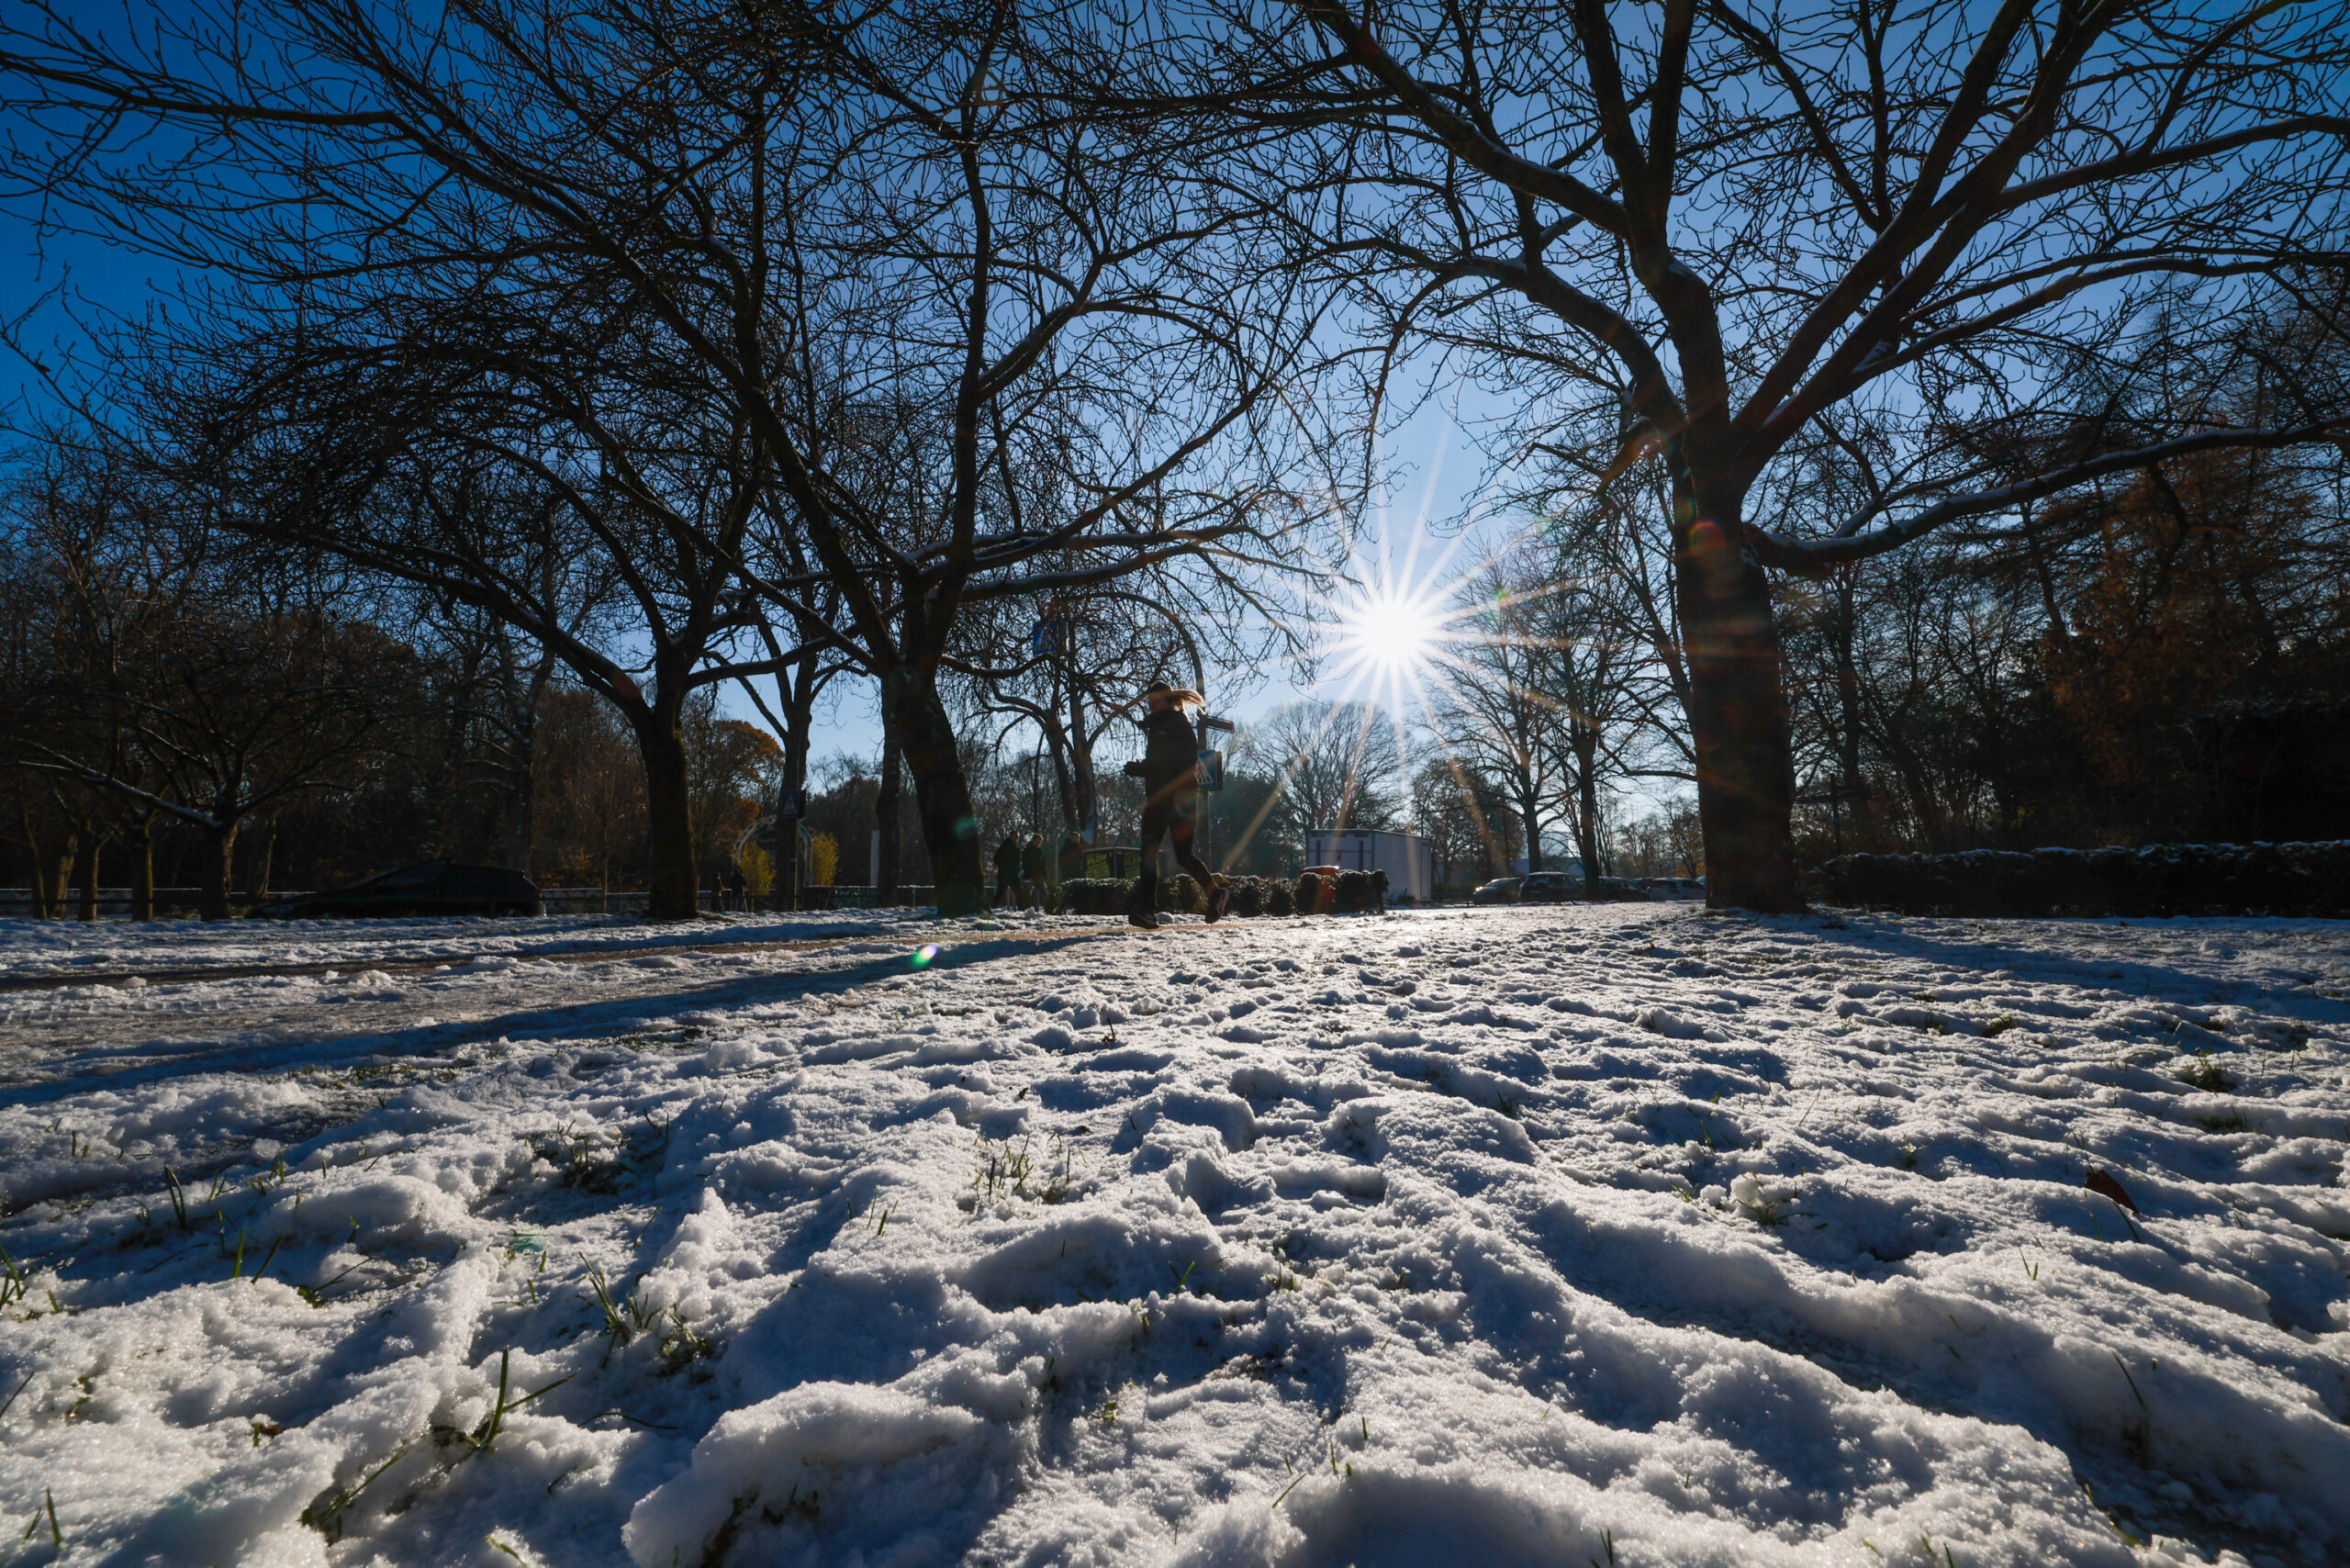 Schnee liegt im Stadtpark, eine Frau joggt auf dem Weg.